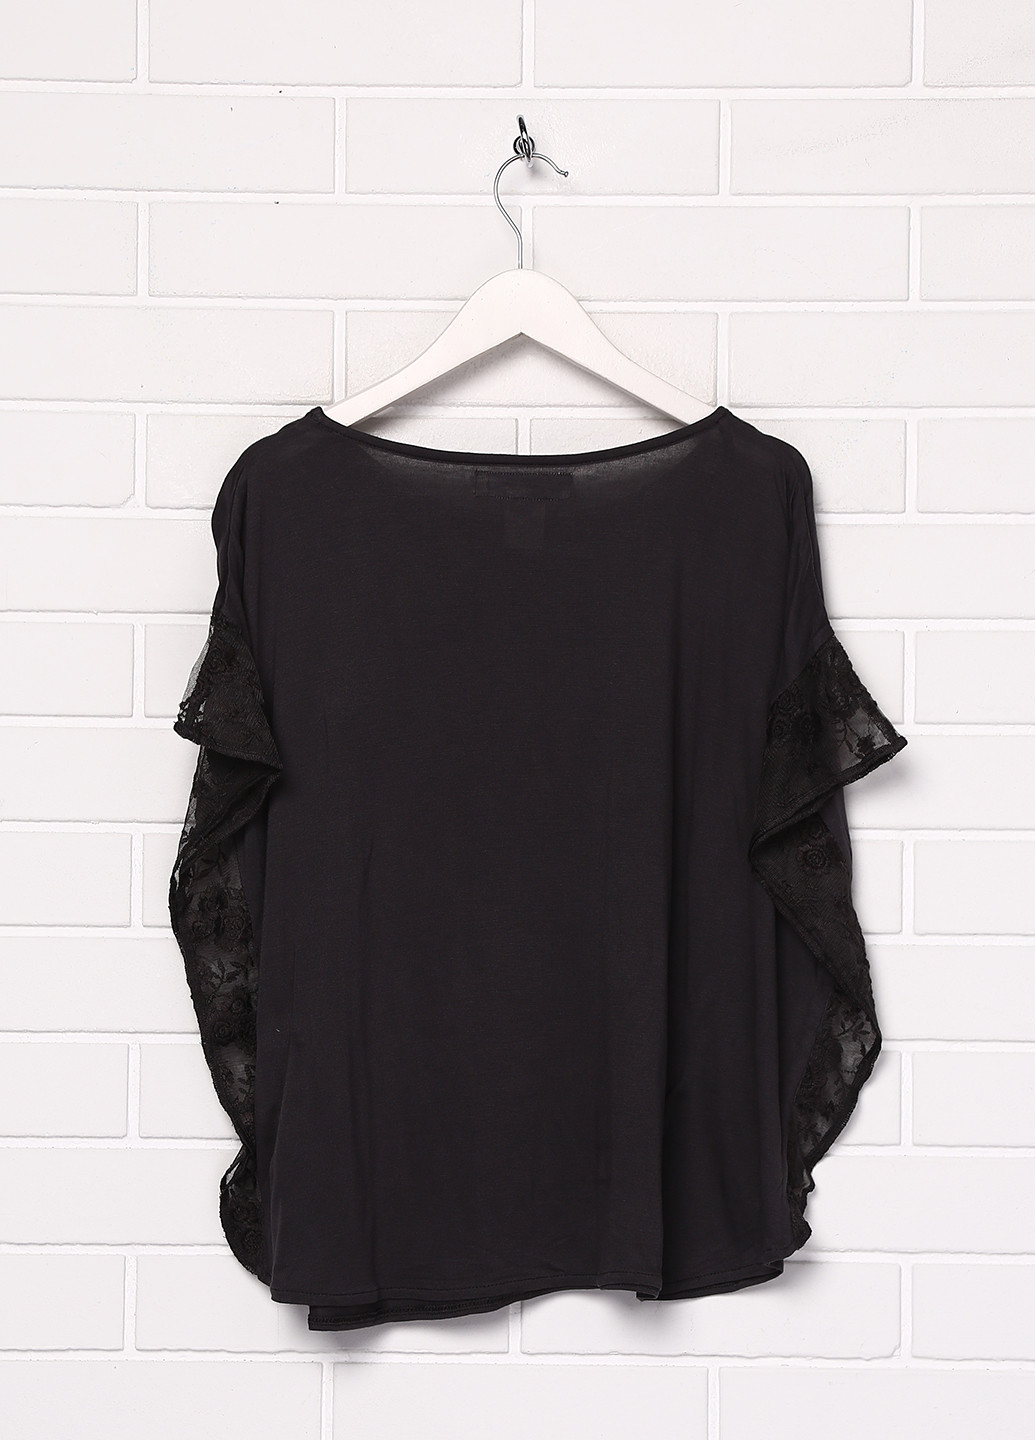 Грифельно-серая однотонная блузка с коротким рукавом H&M летняя